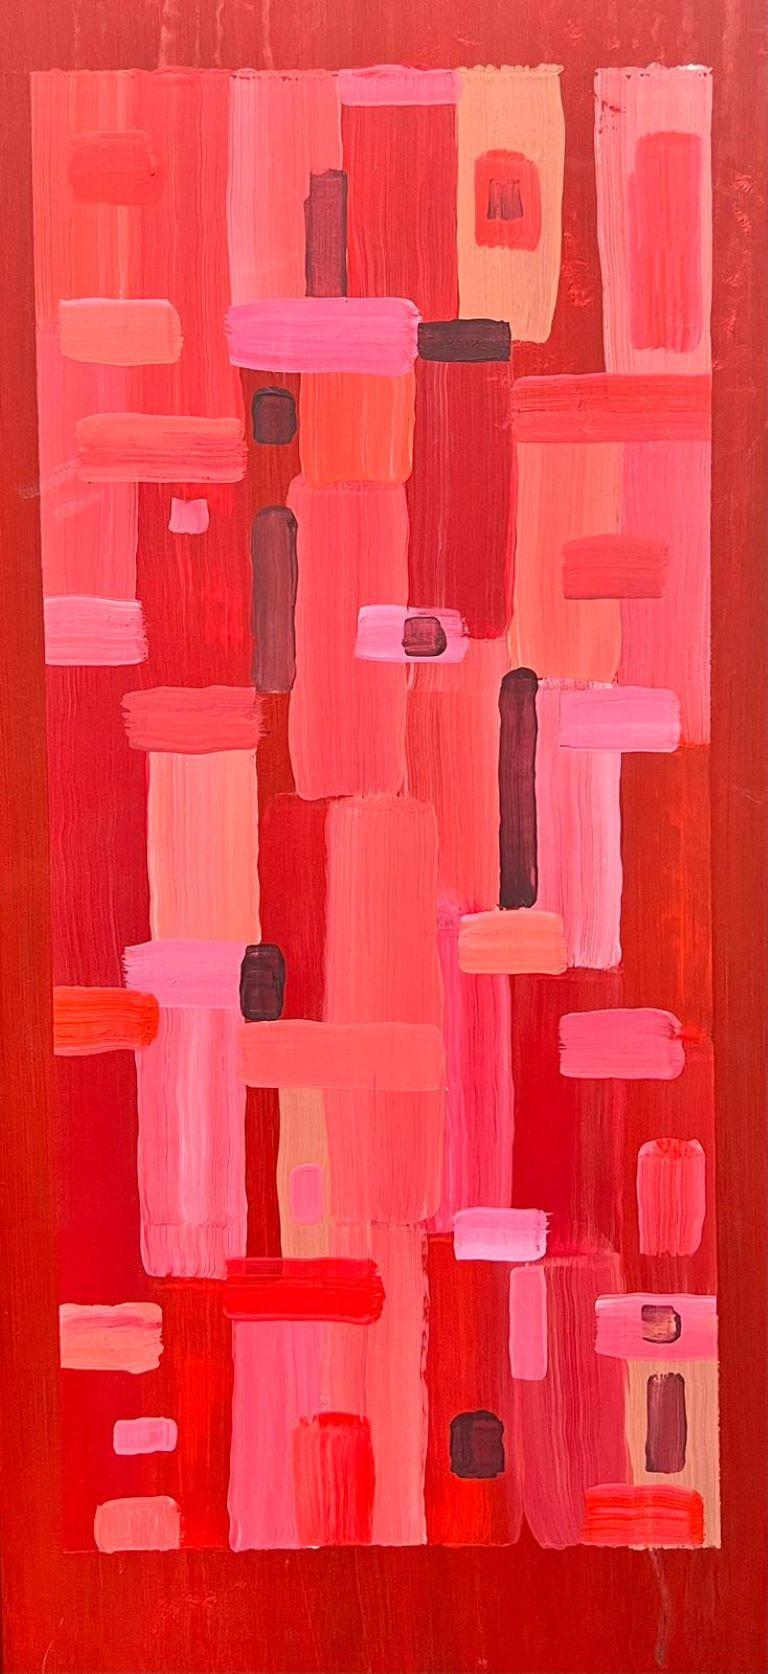 Abstract Painting Contemporary British - Peinture britannique cubiste géométrique abstraite de formes abstraites roses et rouges